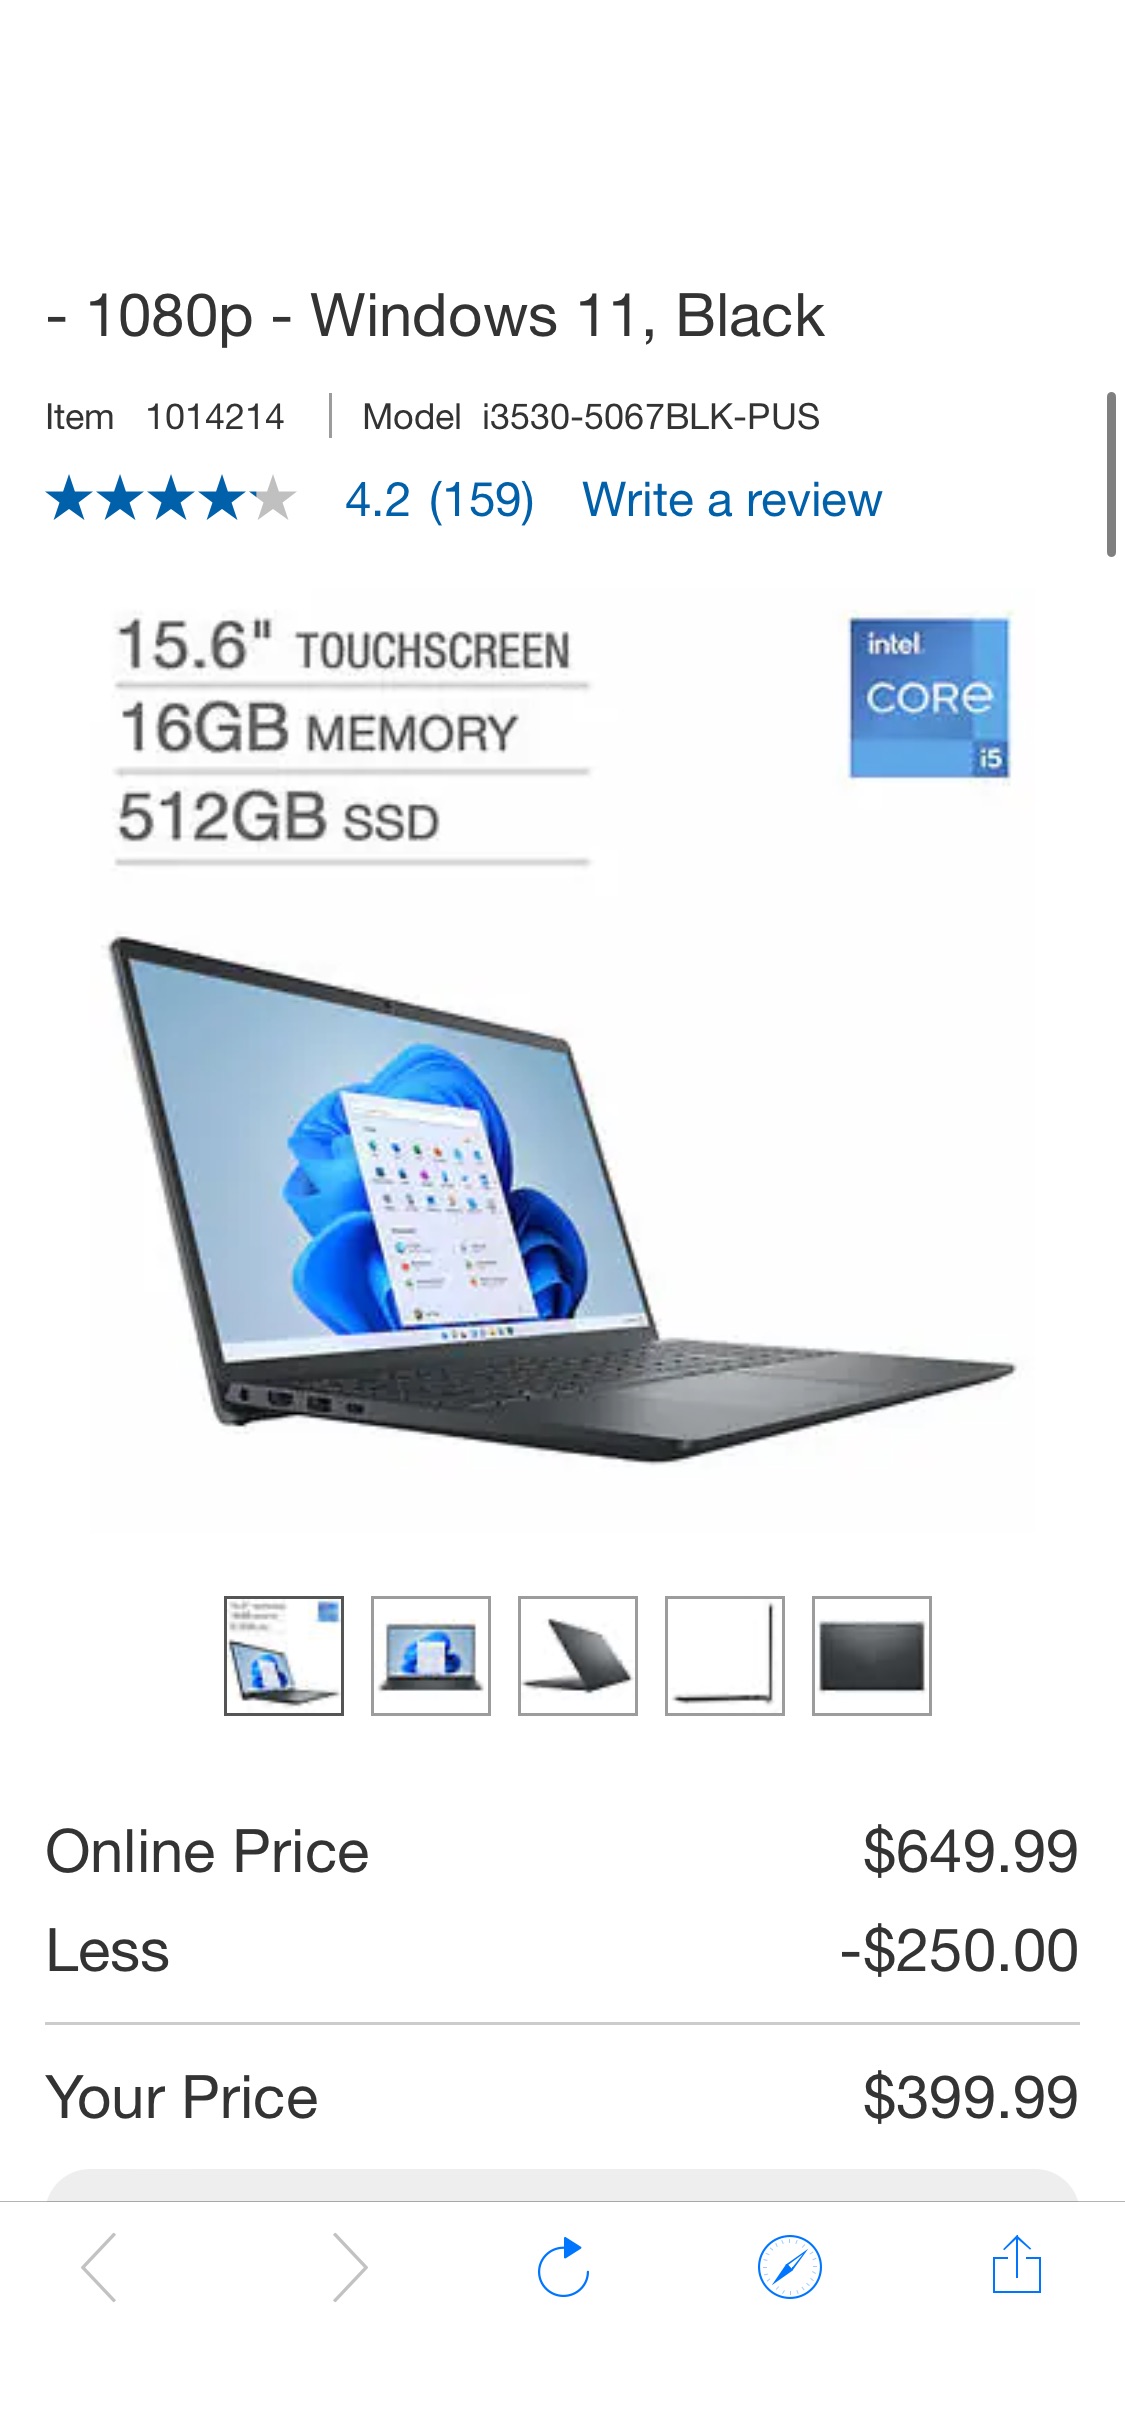 Dell Inspiron 15.6" Touchscreen Laptop - 13th Gen Intel Core i5-1335U - 1080p - Windows 11, Black | Costco